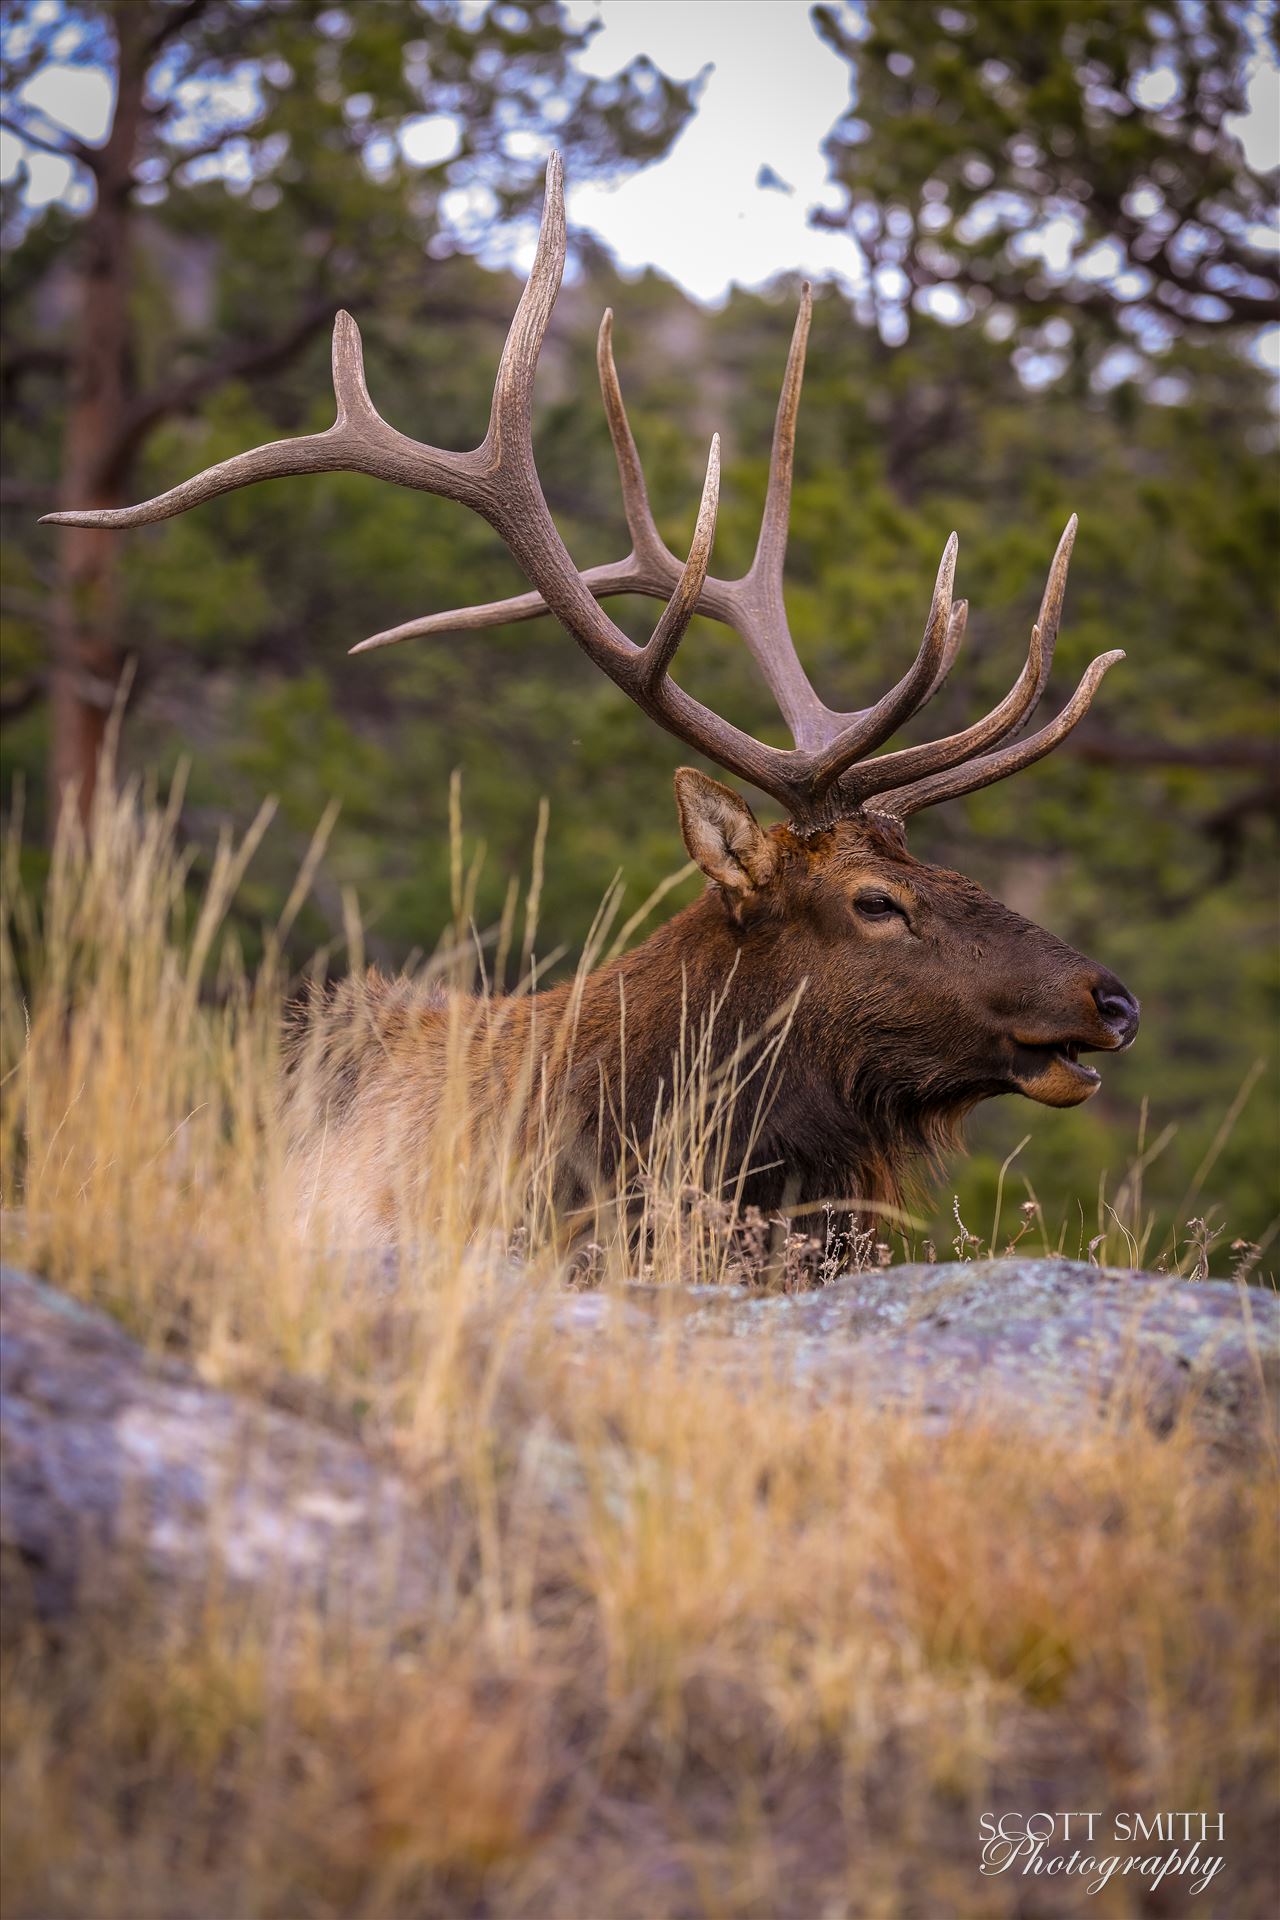 Sunday Elk No 05 - A heard of Elk near the entrance to Rocky Mountain National Park, Estes Park, Colorado. by Scott Smith Photos